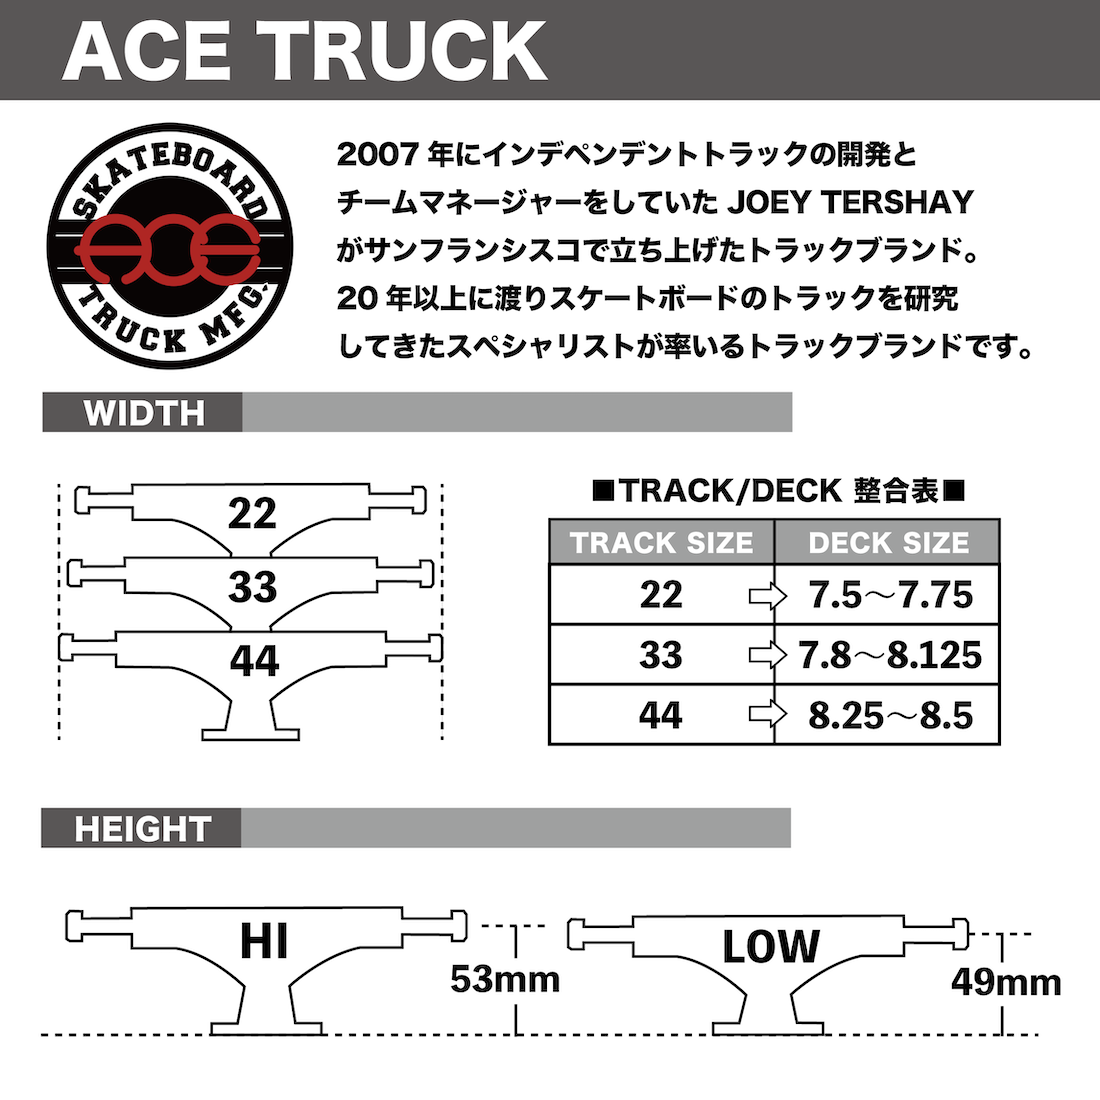 【Ace Truck】 Standard - 44 (149)